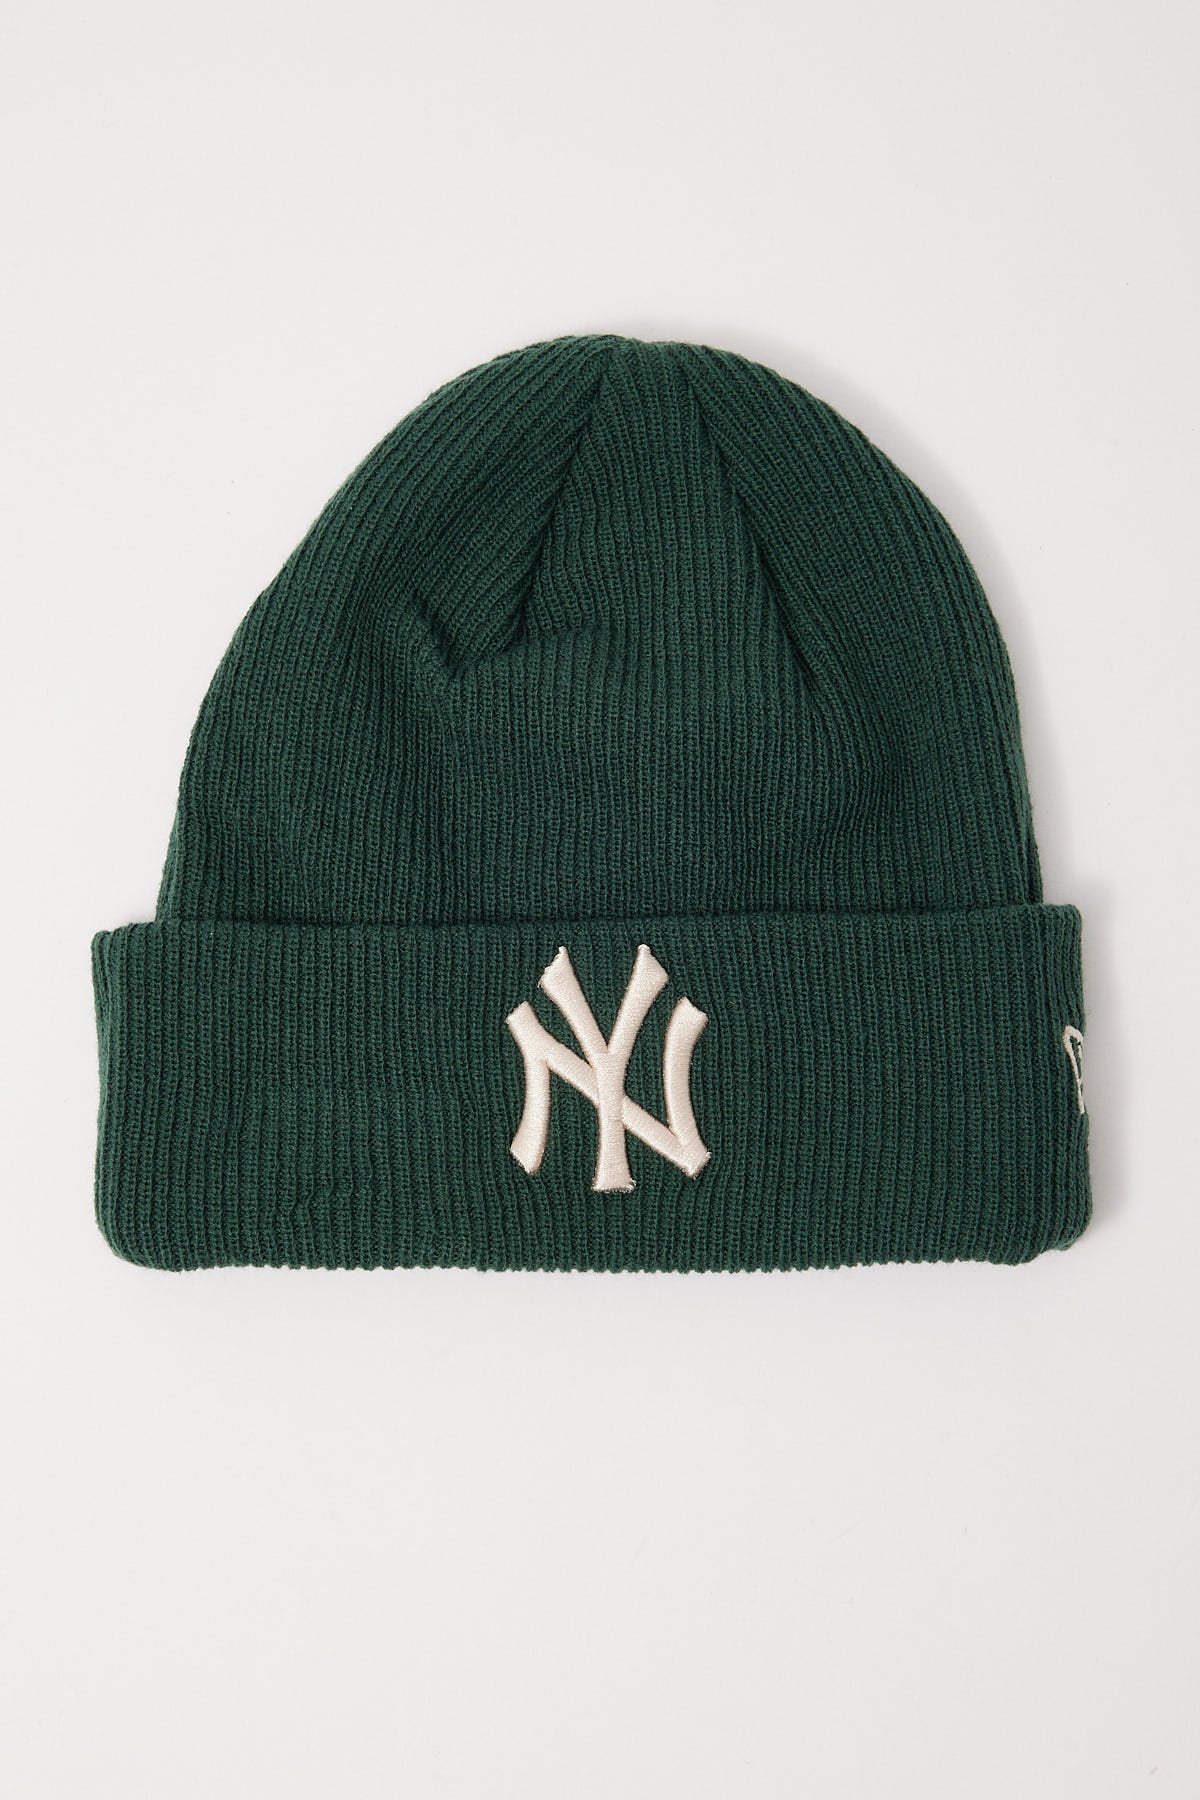 New Era NY Yankees Knit Beanie Dark Green/Stone